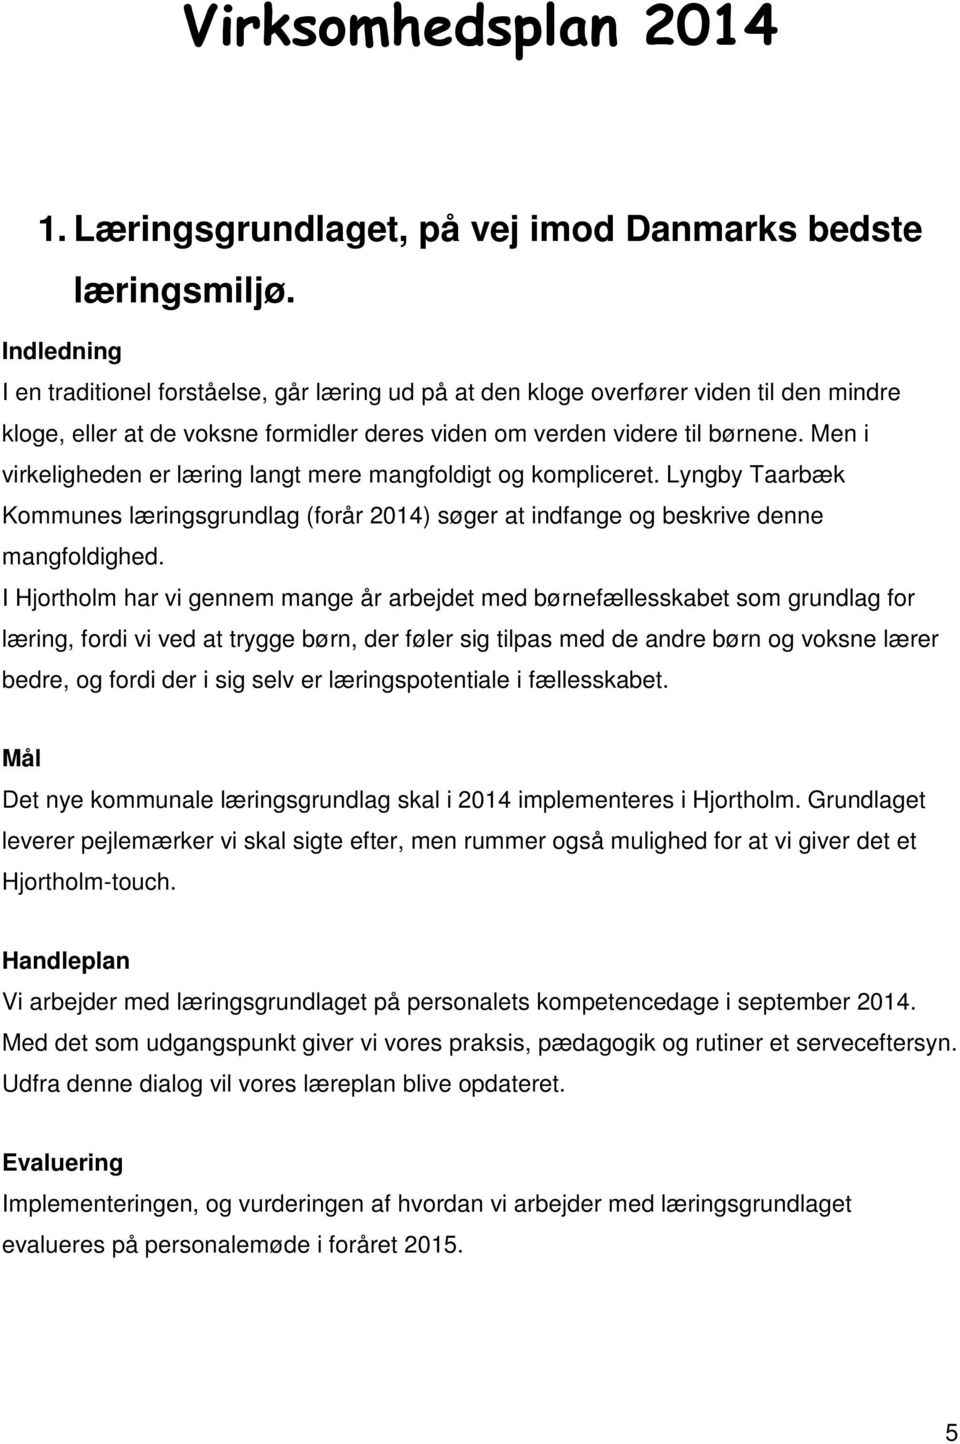 Men i virkeligheden er læring langt mere mangfoldigt og kompliceret. Lyngby Taarbæk Kommunes læringsgrundlag (forår 2014) søger at indfange og beskrive denne mangfoldighed.